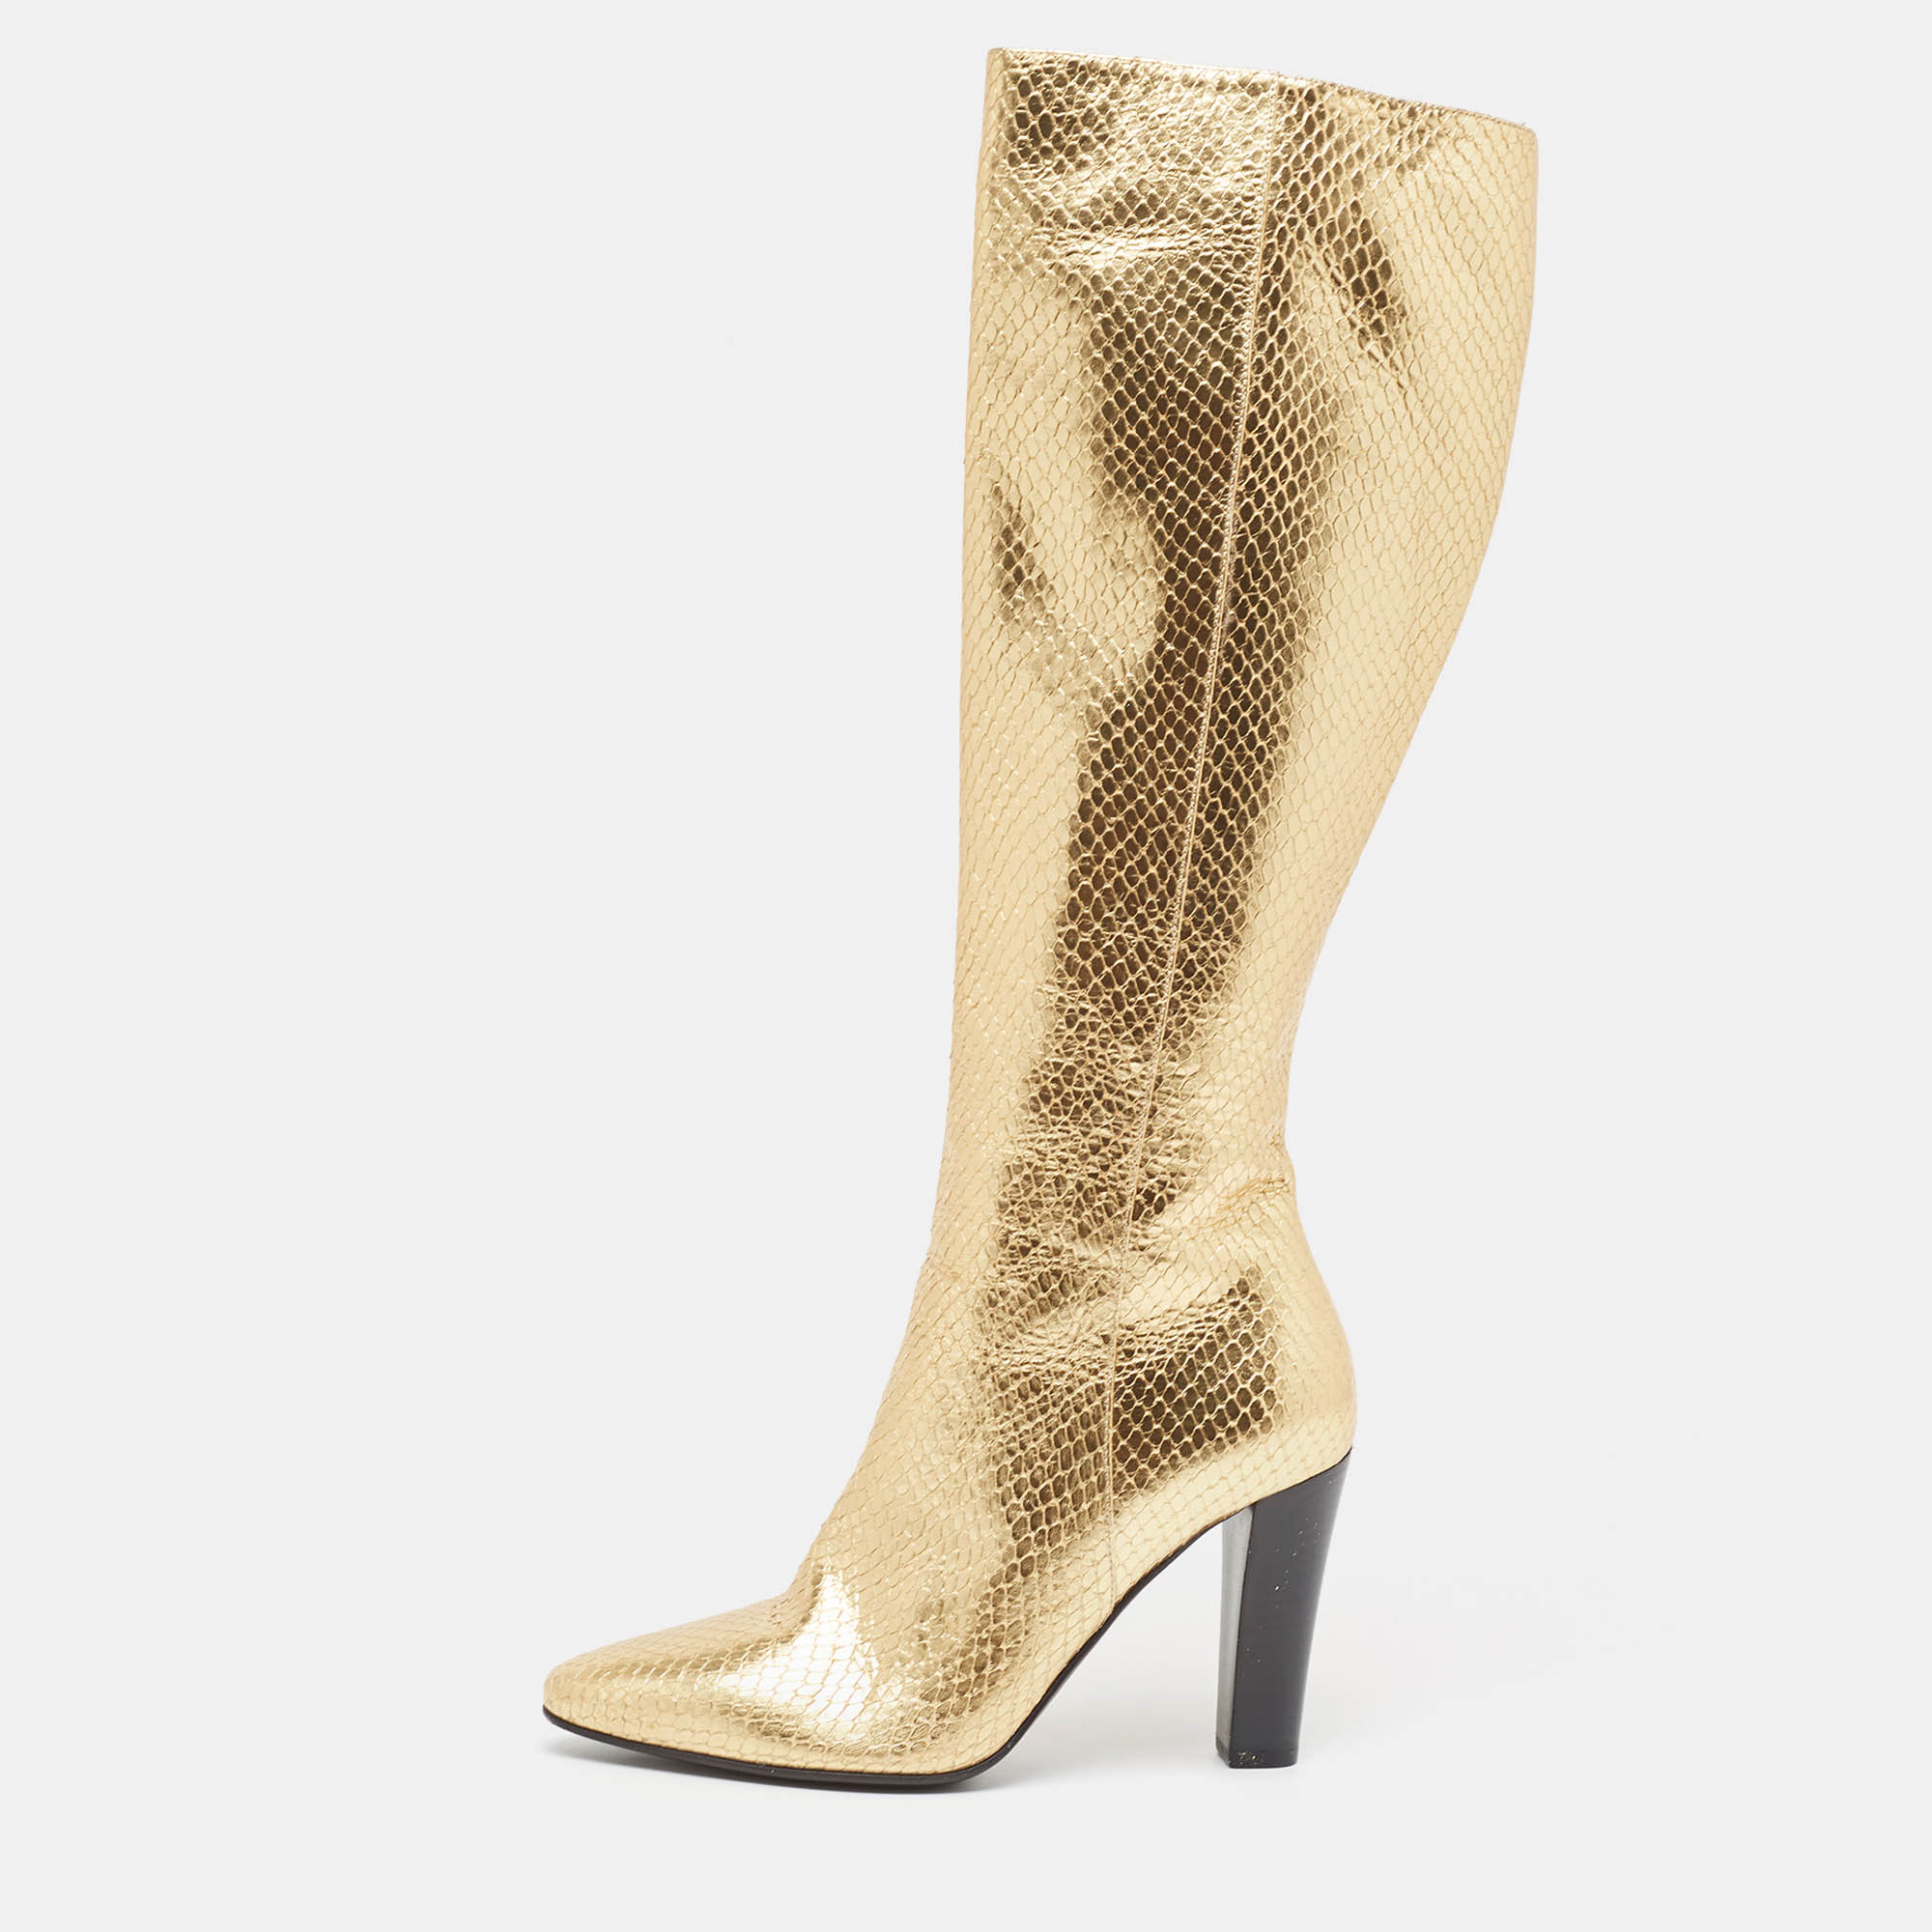 Saint laurent paris saint laurent gold python embossed leather knee length boots size 35